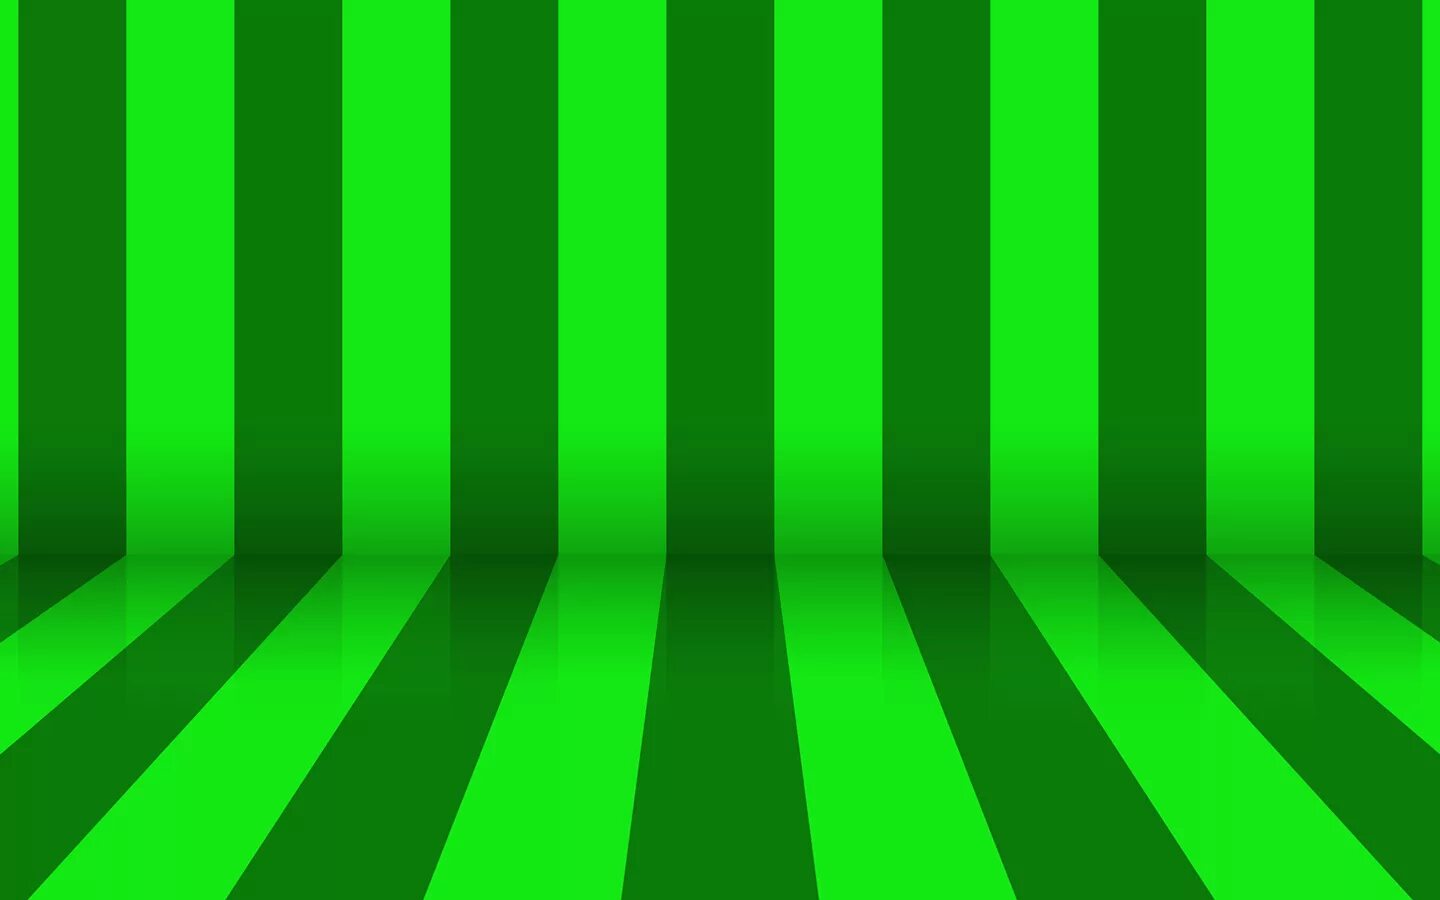 Три зеленых полосы. Зеленая полоса. Зеленый фон с полосками. Зеленая полоска. Чёрно-зелёные полоски.